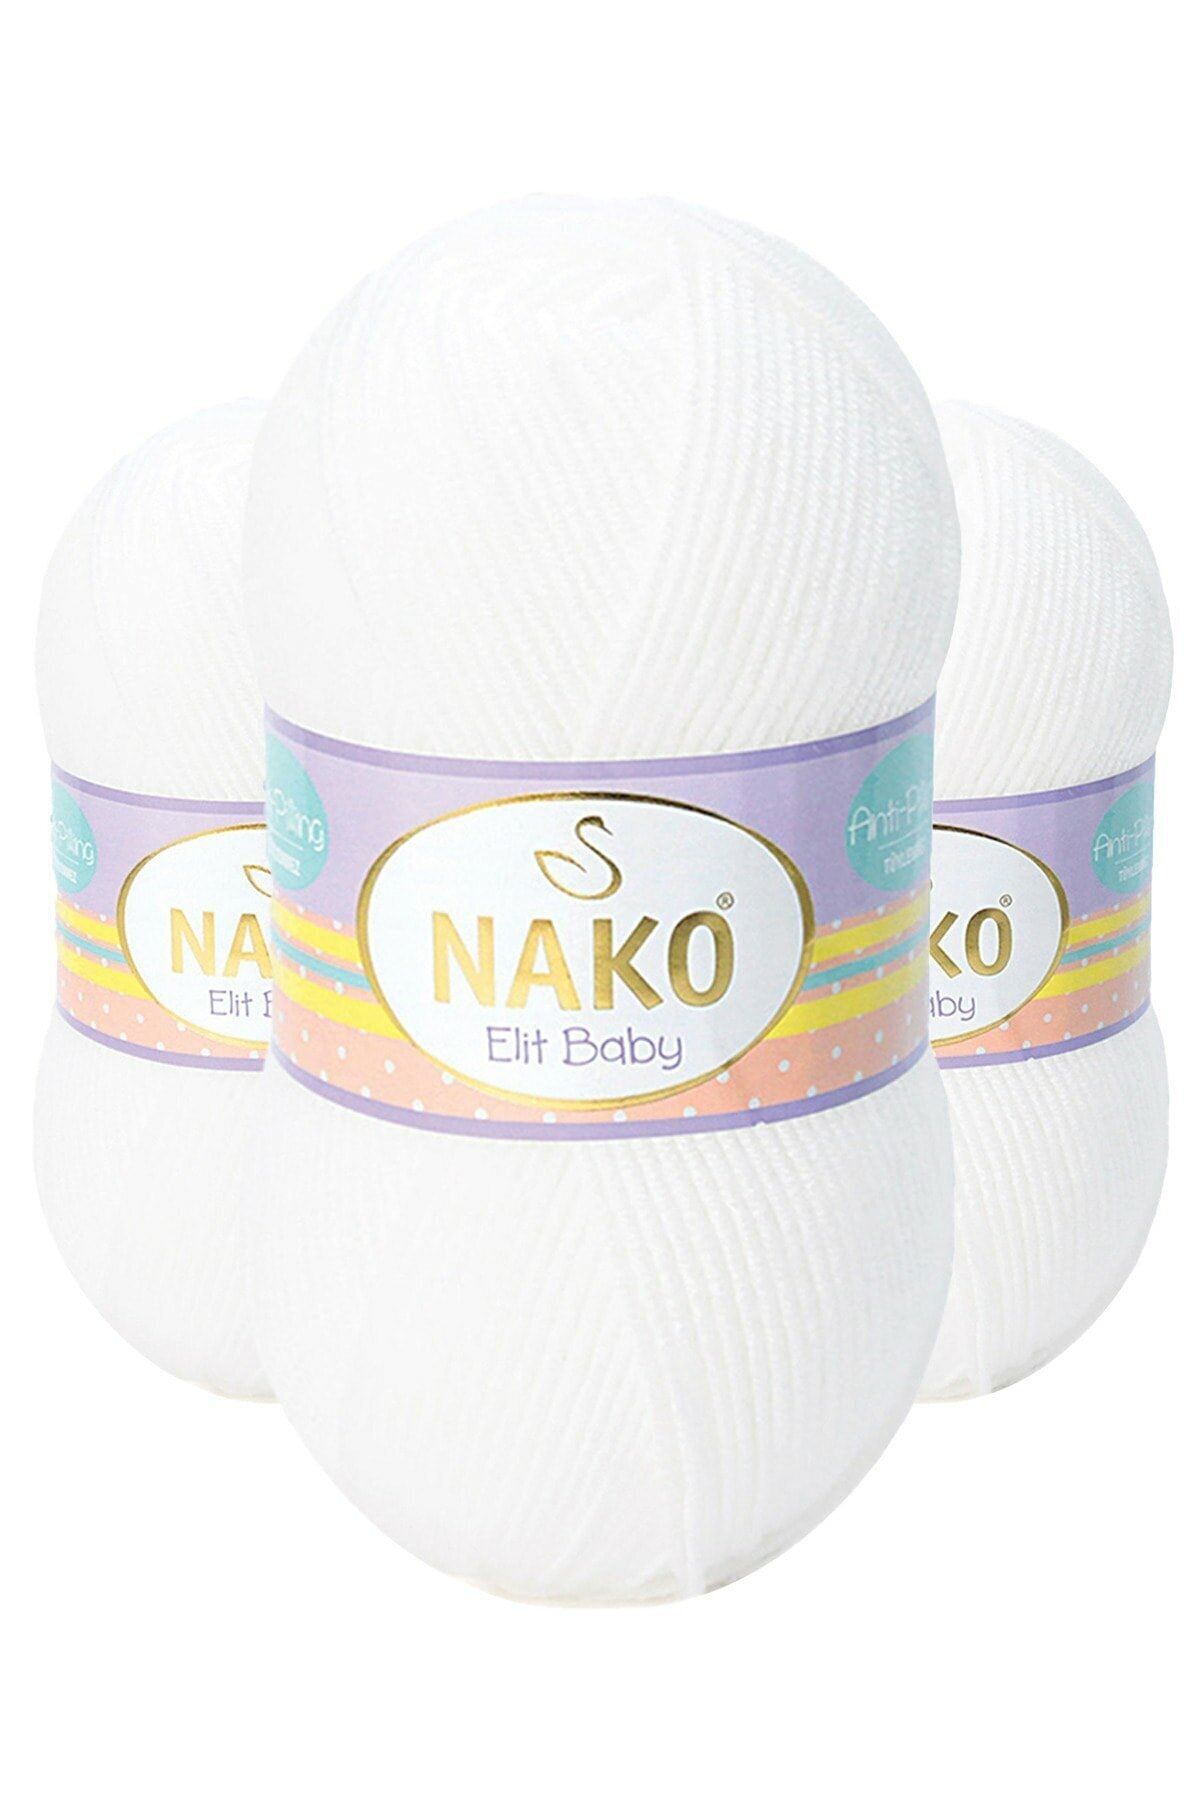 Nako 3 Adet Elit Baby 208 (BEYAZ) Anti-pilling El Örgü Bebek Ipi/yünü